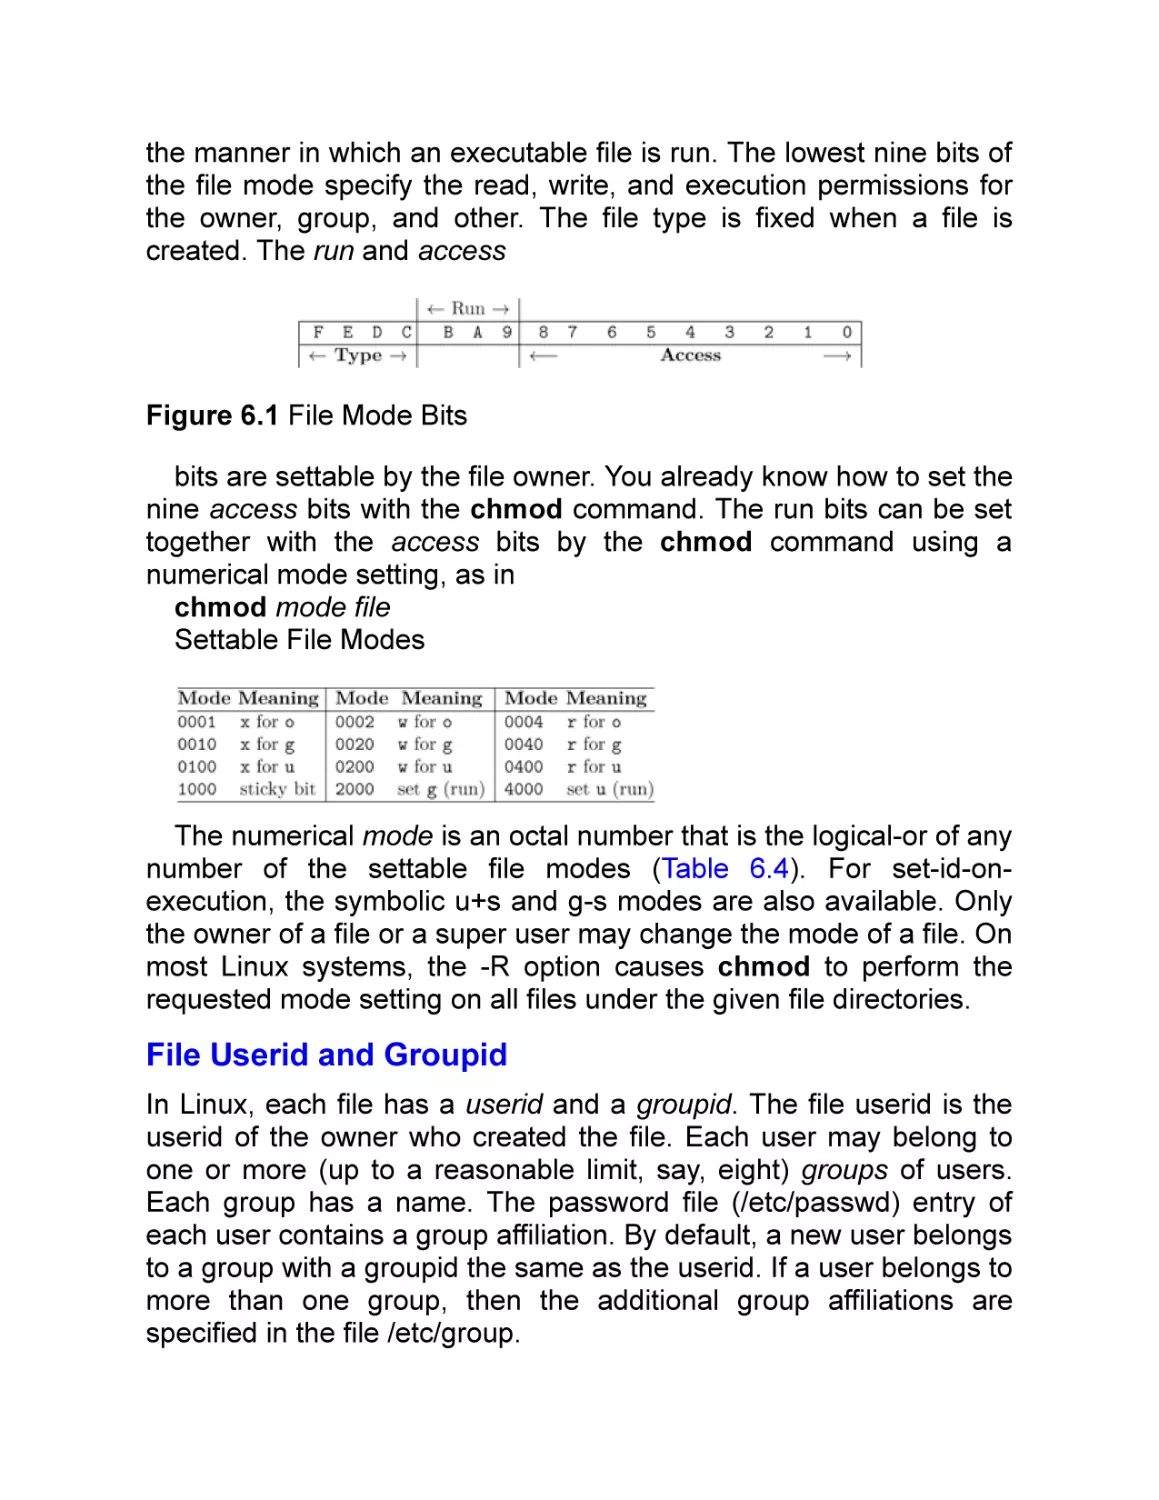 File Userid and Groupid